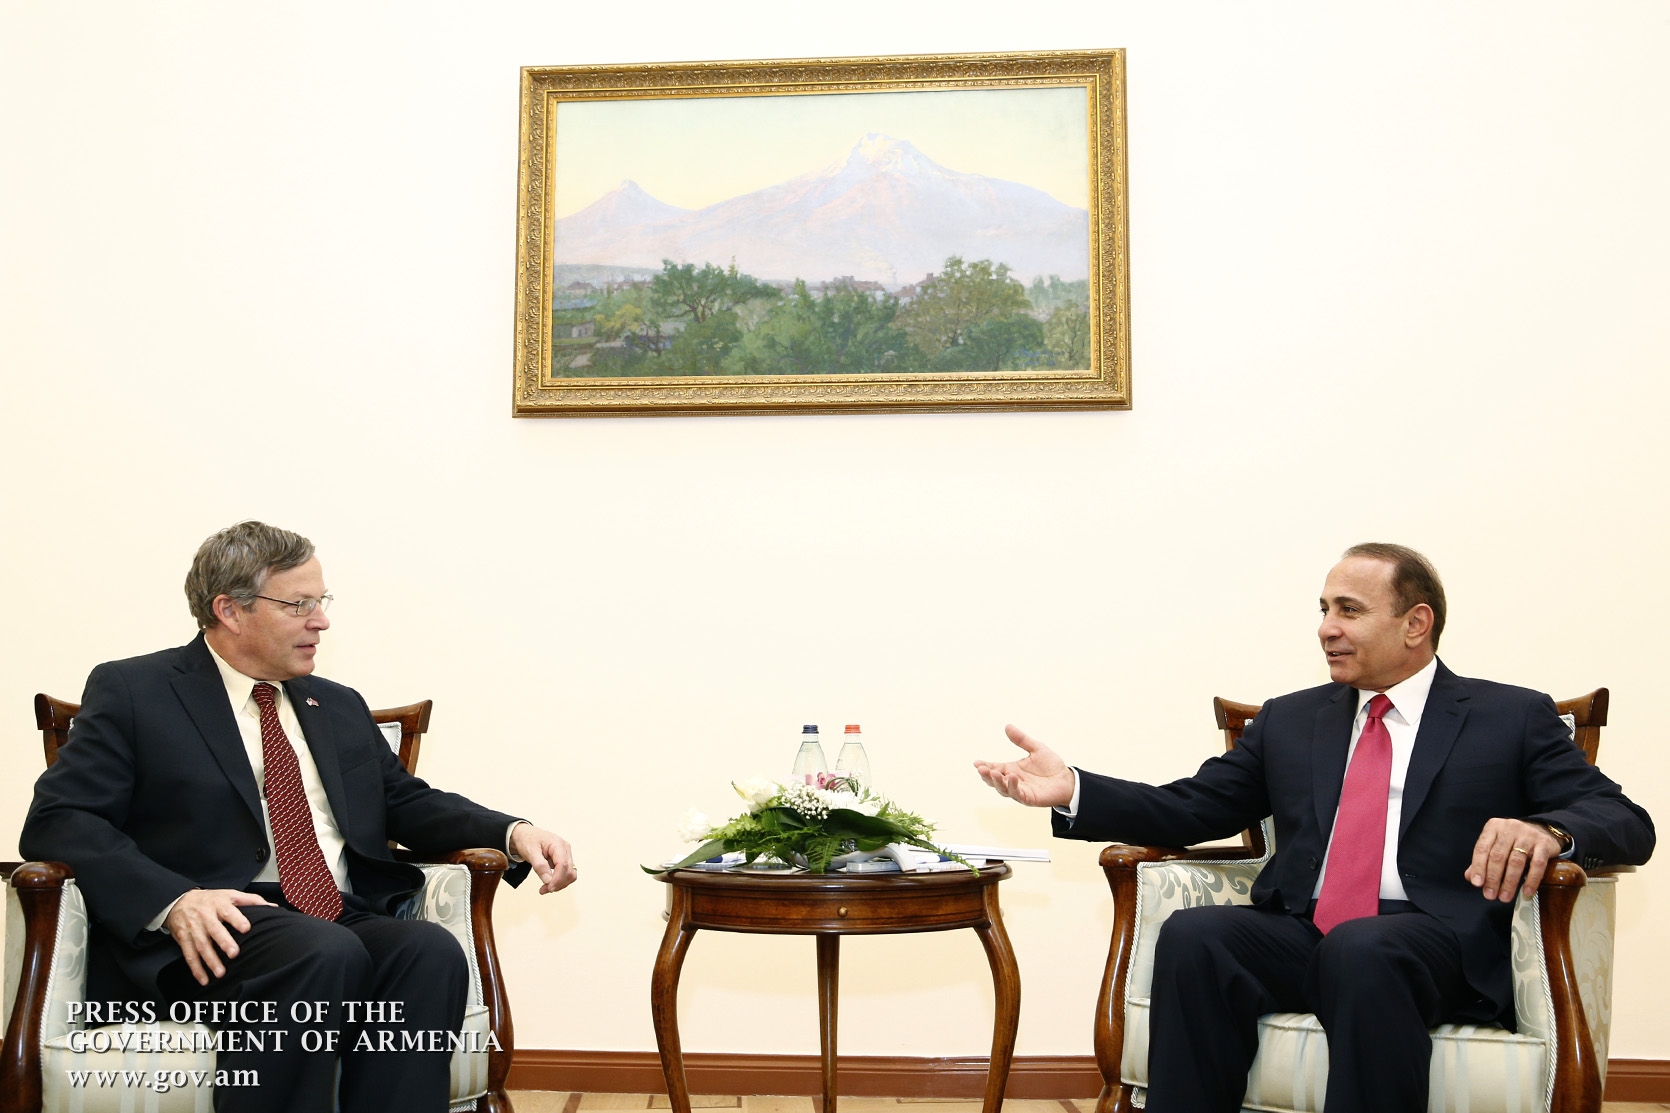 ՀՀ վարչապետը և ԱՄՆ դեսպանը վերահաստատել են համագործակցությունը 
շարունակելու պատրաստակամությունը